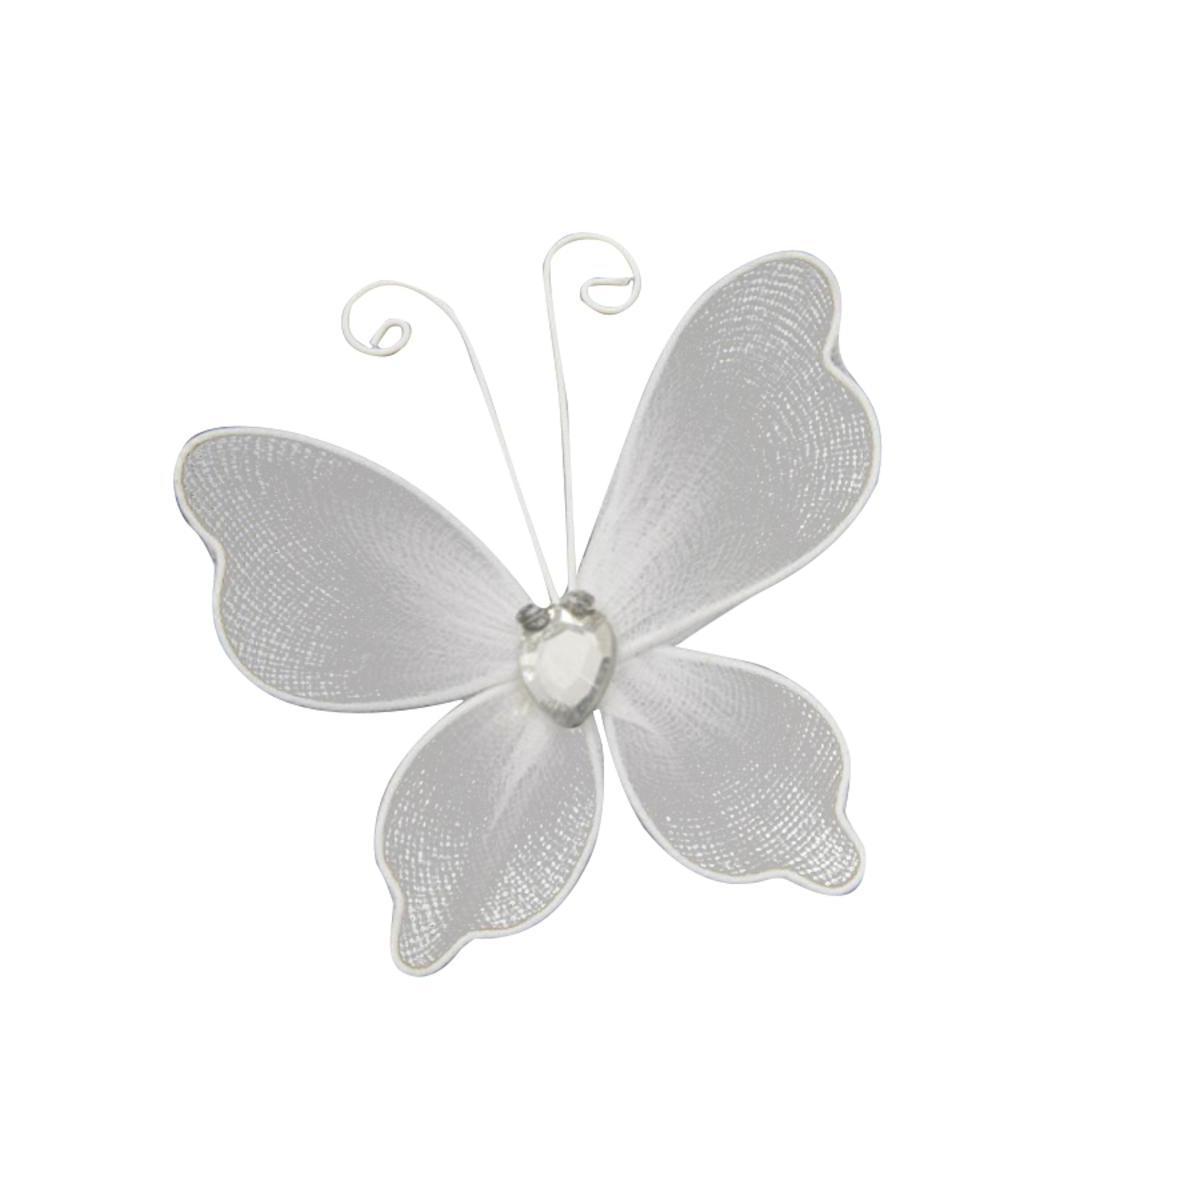 6 papillons décoratifs armature métal - Polyester - 5 x 6 cm - Blanc